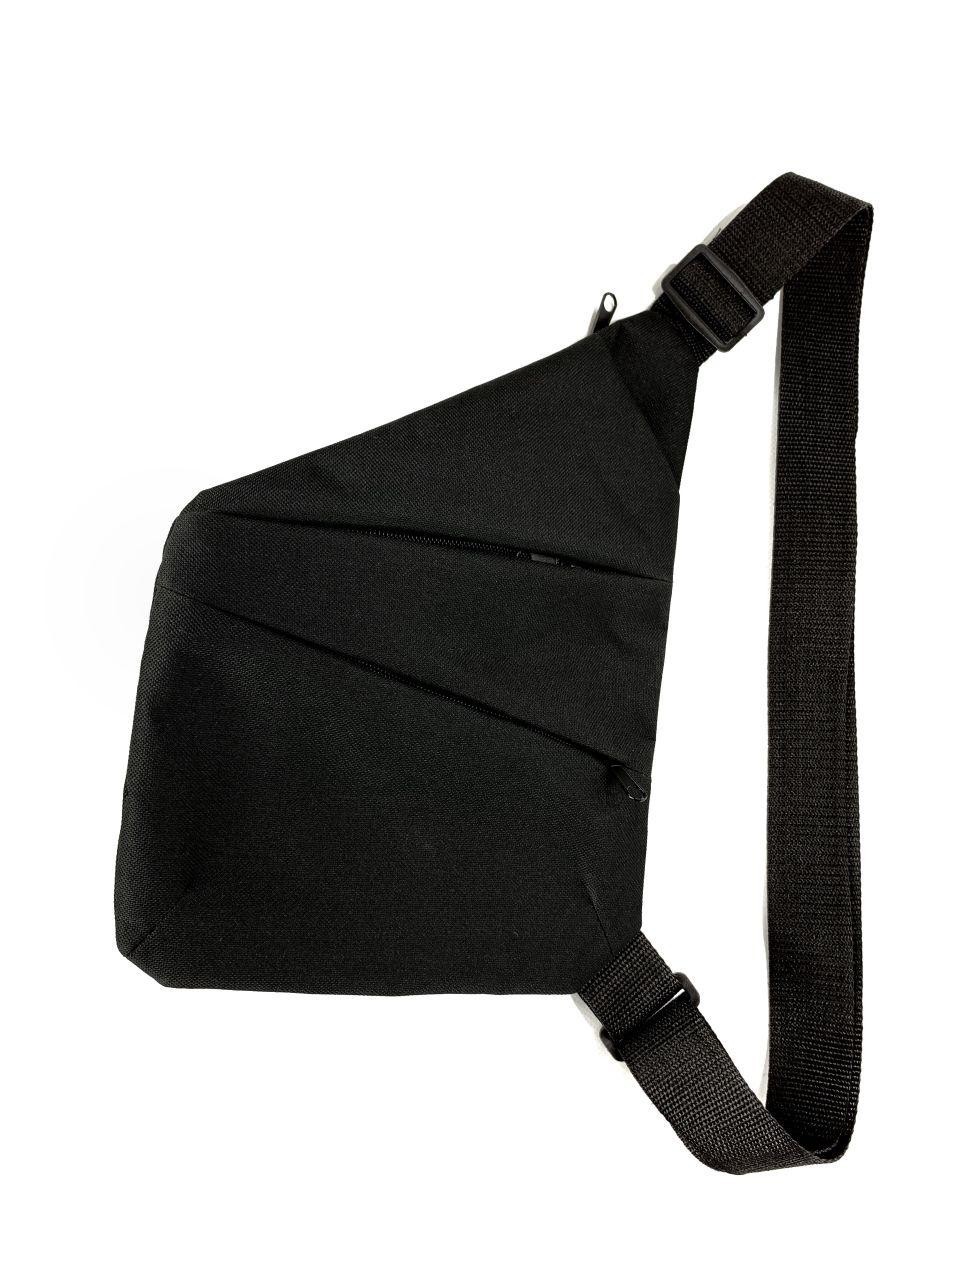 Мужская сумка-кобура через плечо серая